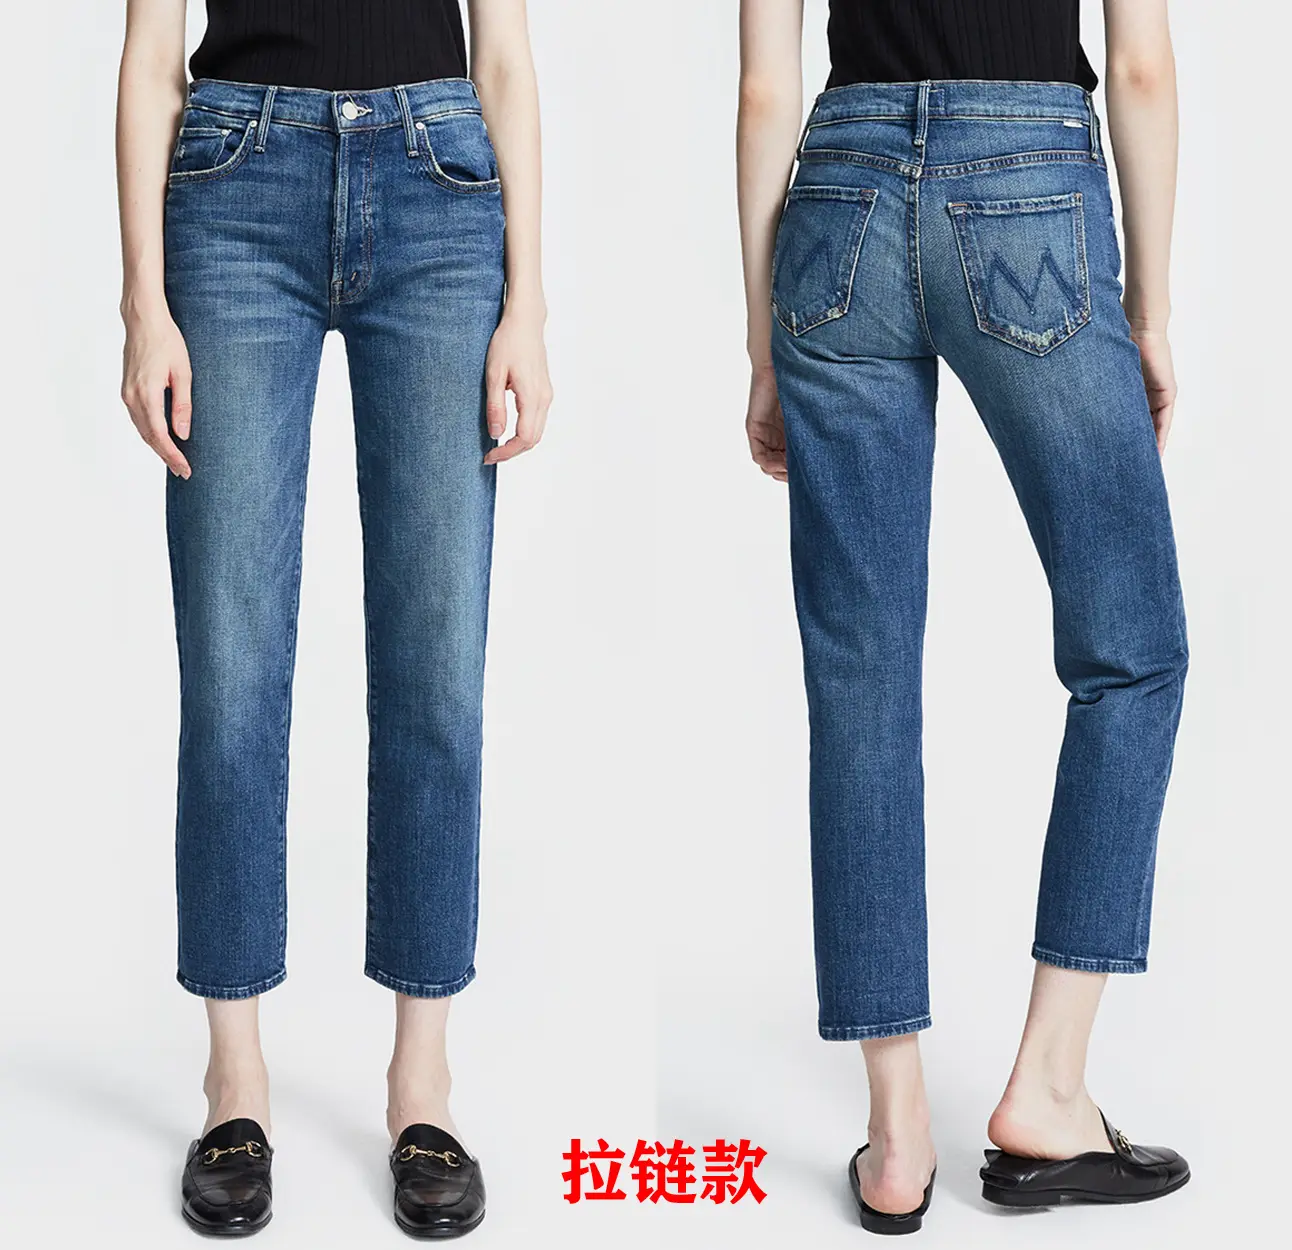 Mo005 calcinha jeans feminina, calcinha de zipper estilo europeu e americano